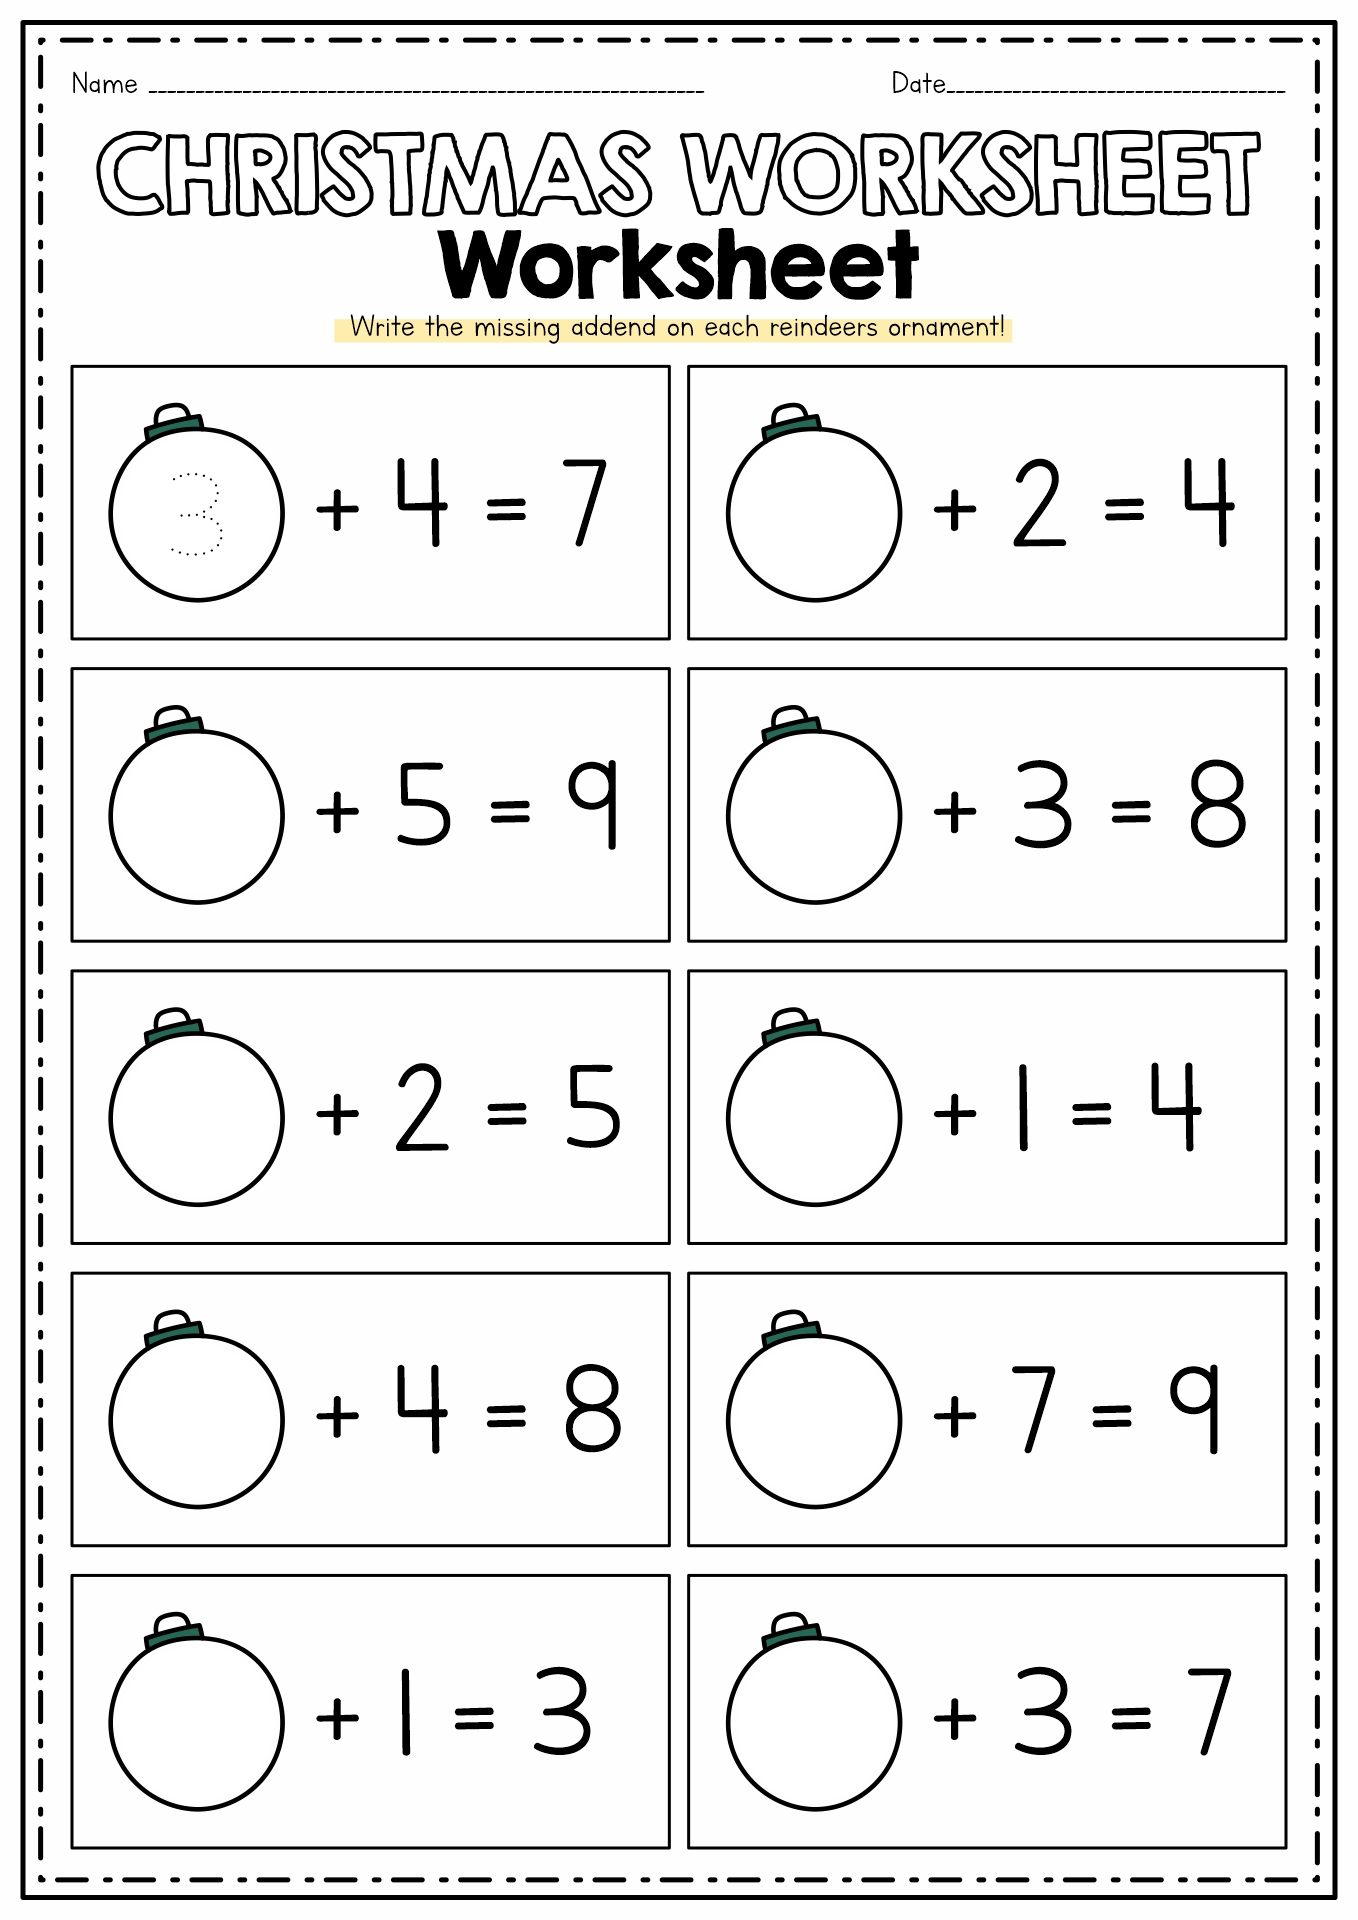 16 Best Images Of Worksheet Names Of Days Days Of Week Worksheets Kindergarten State